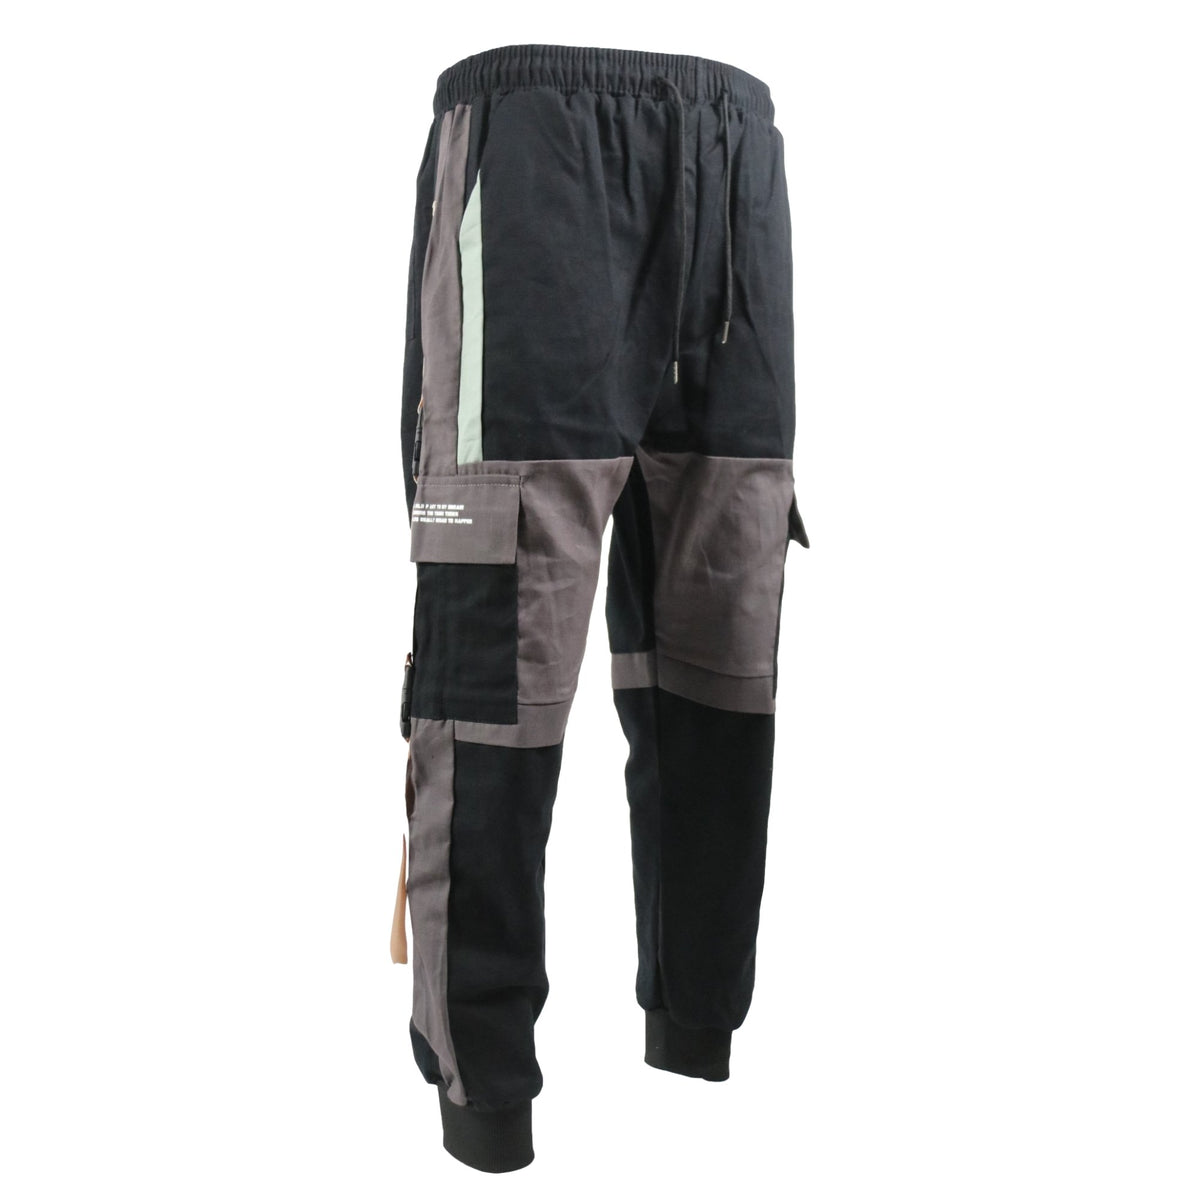 Ninja Cargo Pants – AokLok (Kclot)